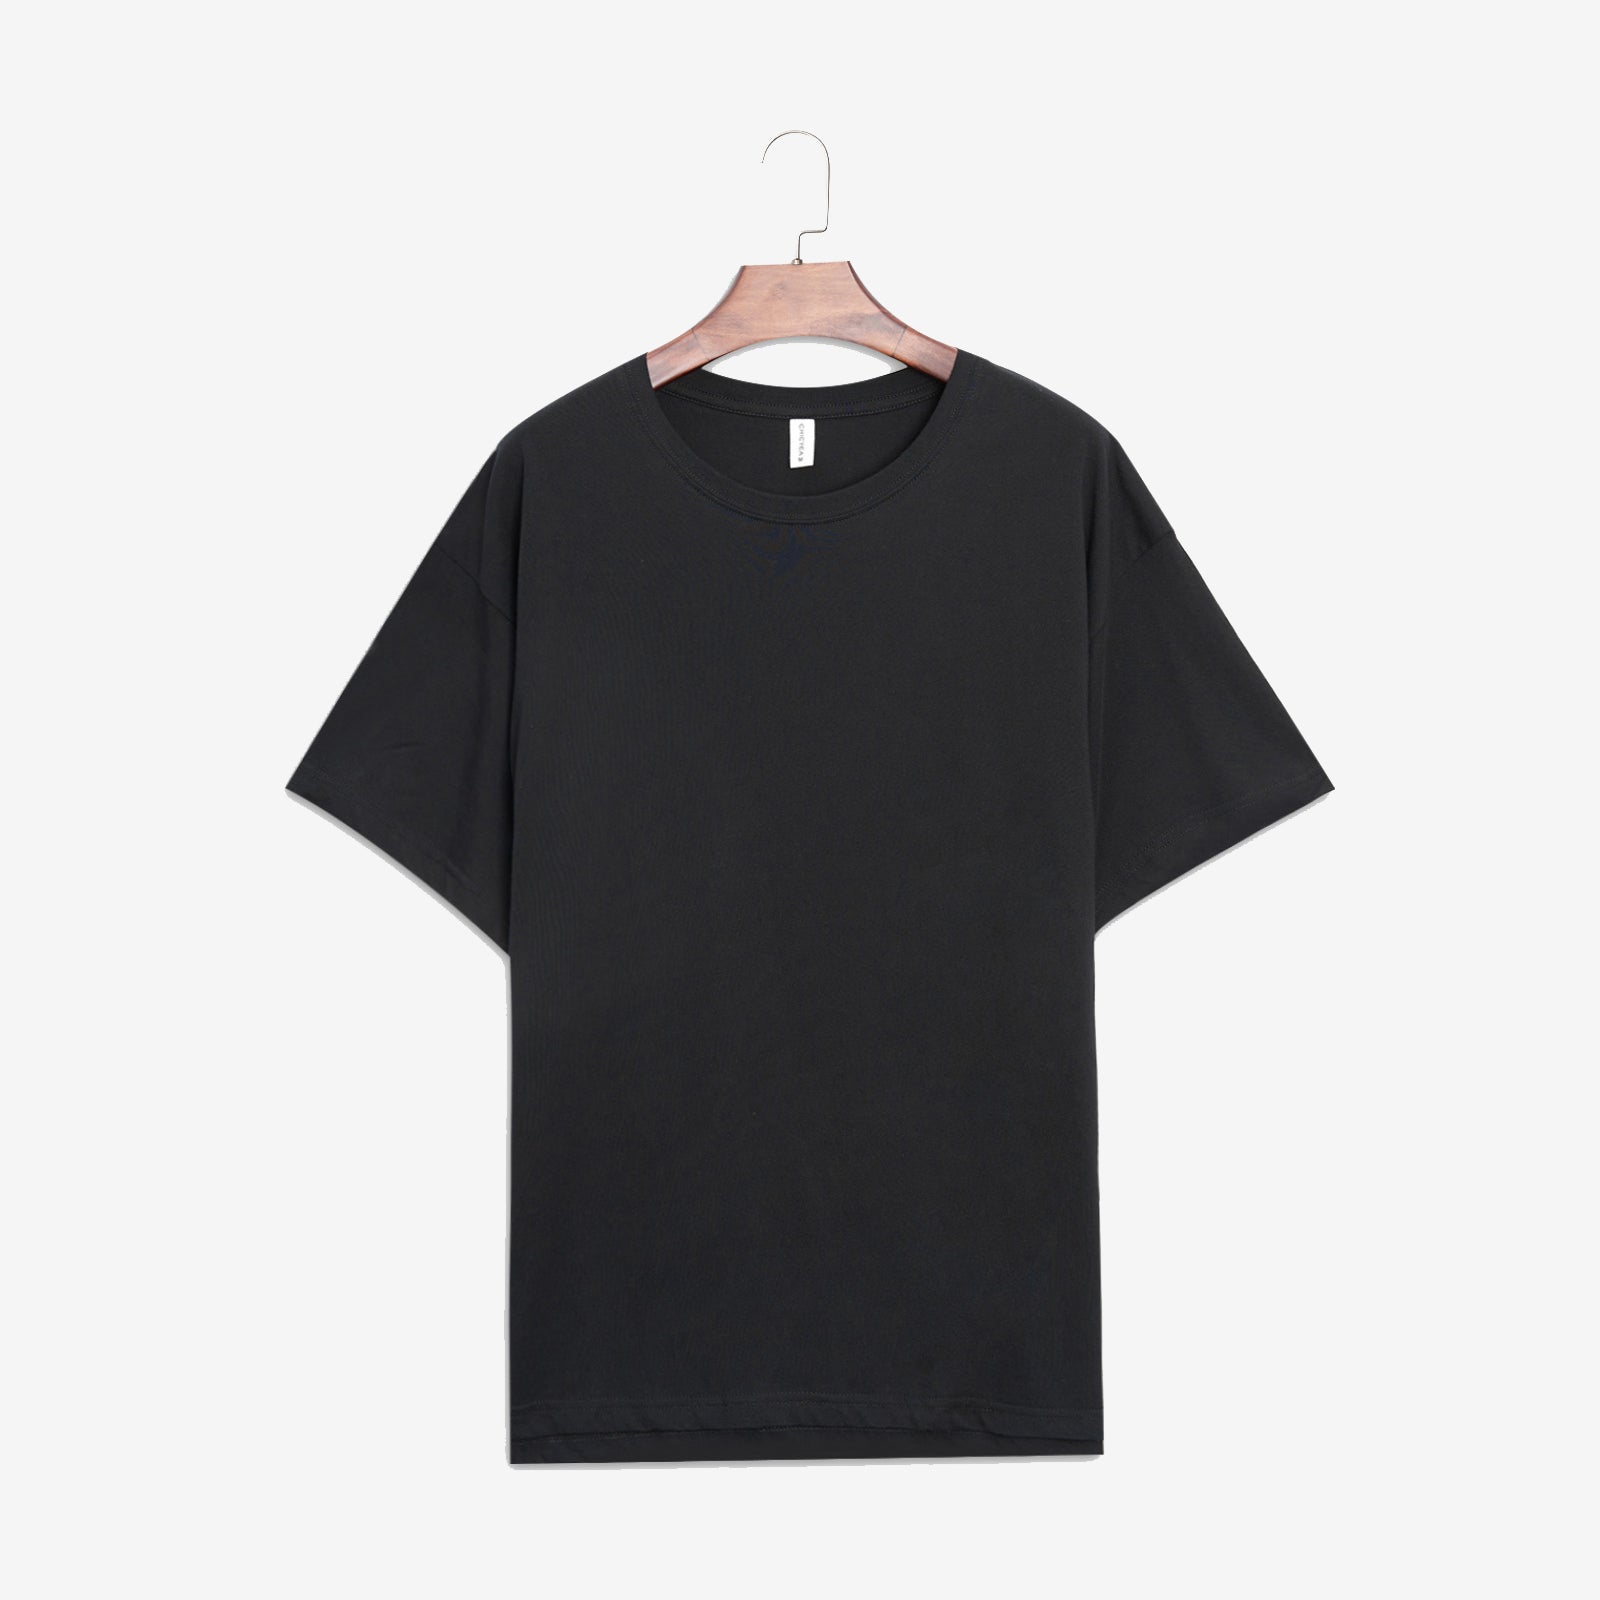 Minnieskull Makes Me Less Of An Ass Printed Black T-Shirt